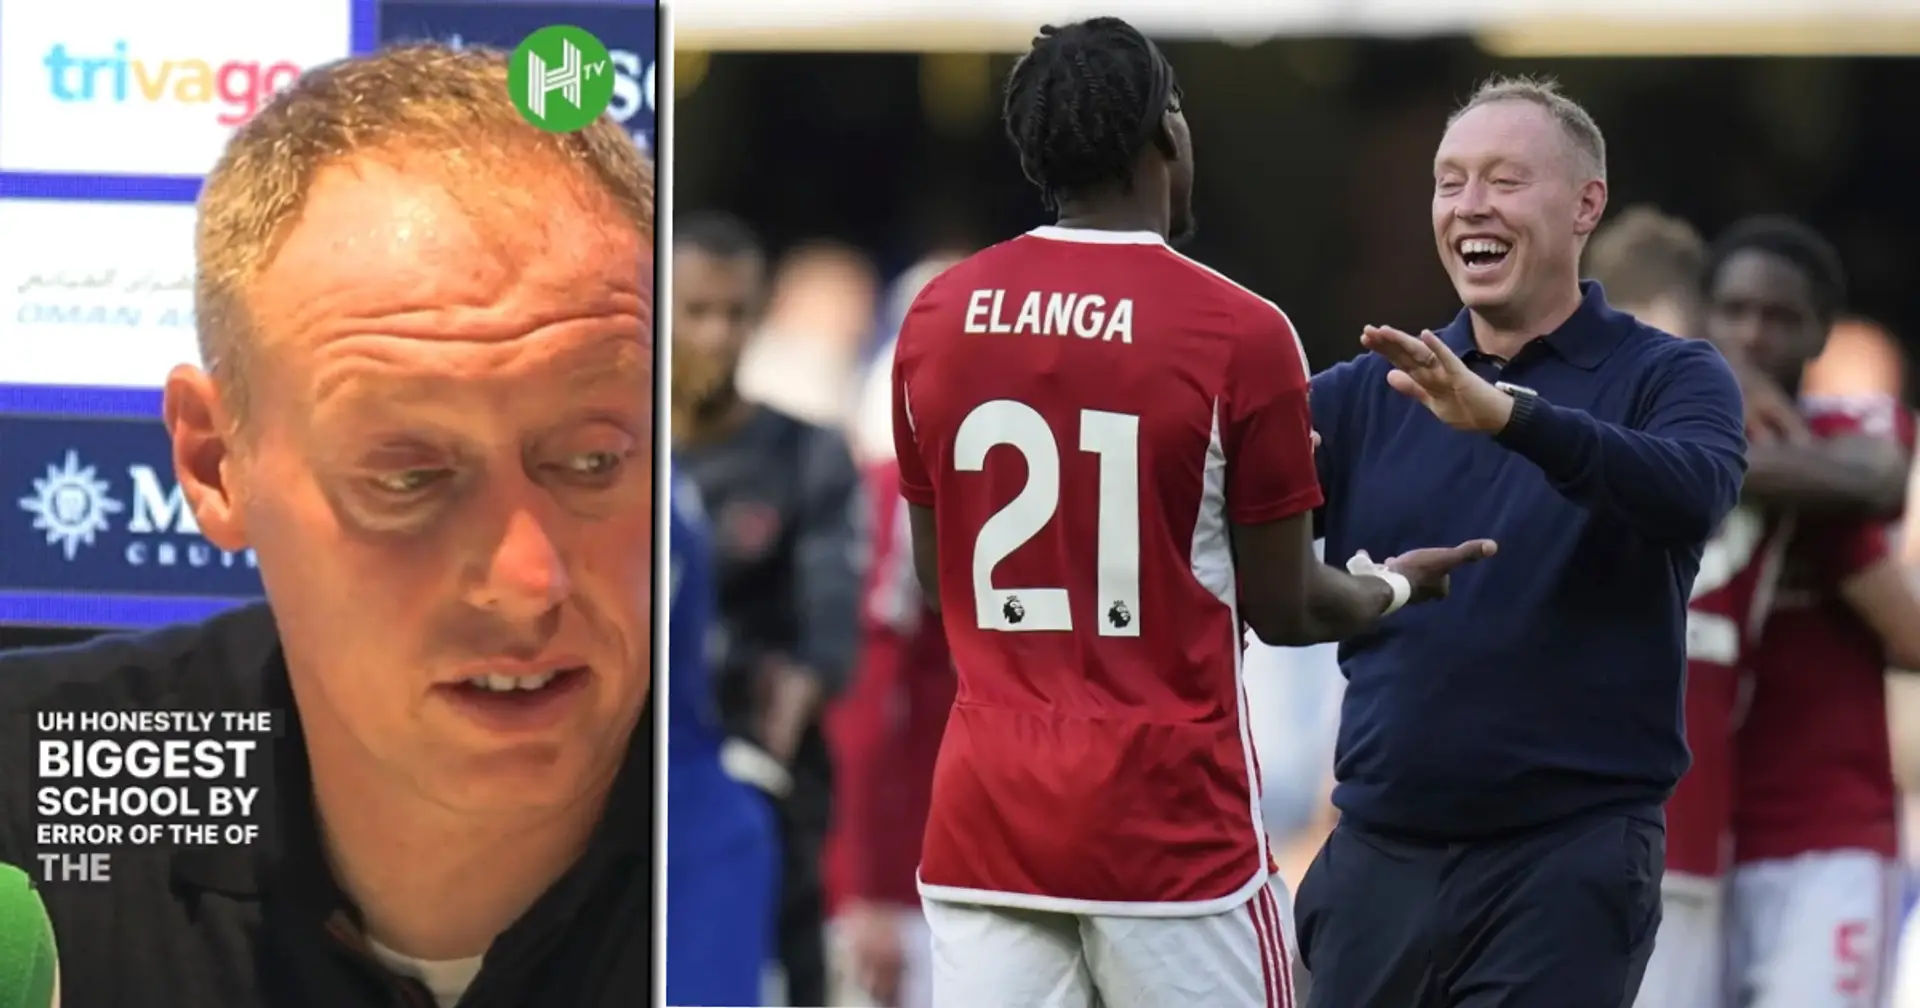 "Je transpire beaucoup" : la curieuse erreur du coach de Nottingham Forest contre Chelsea